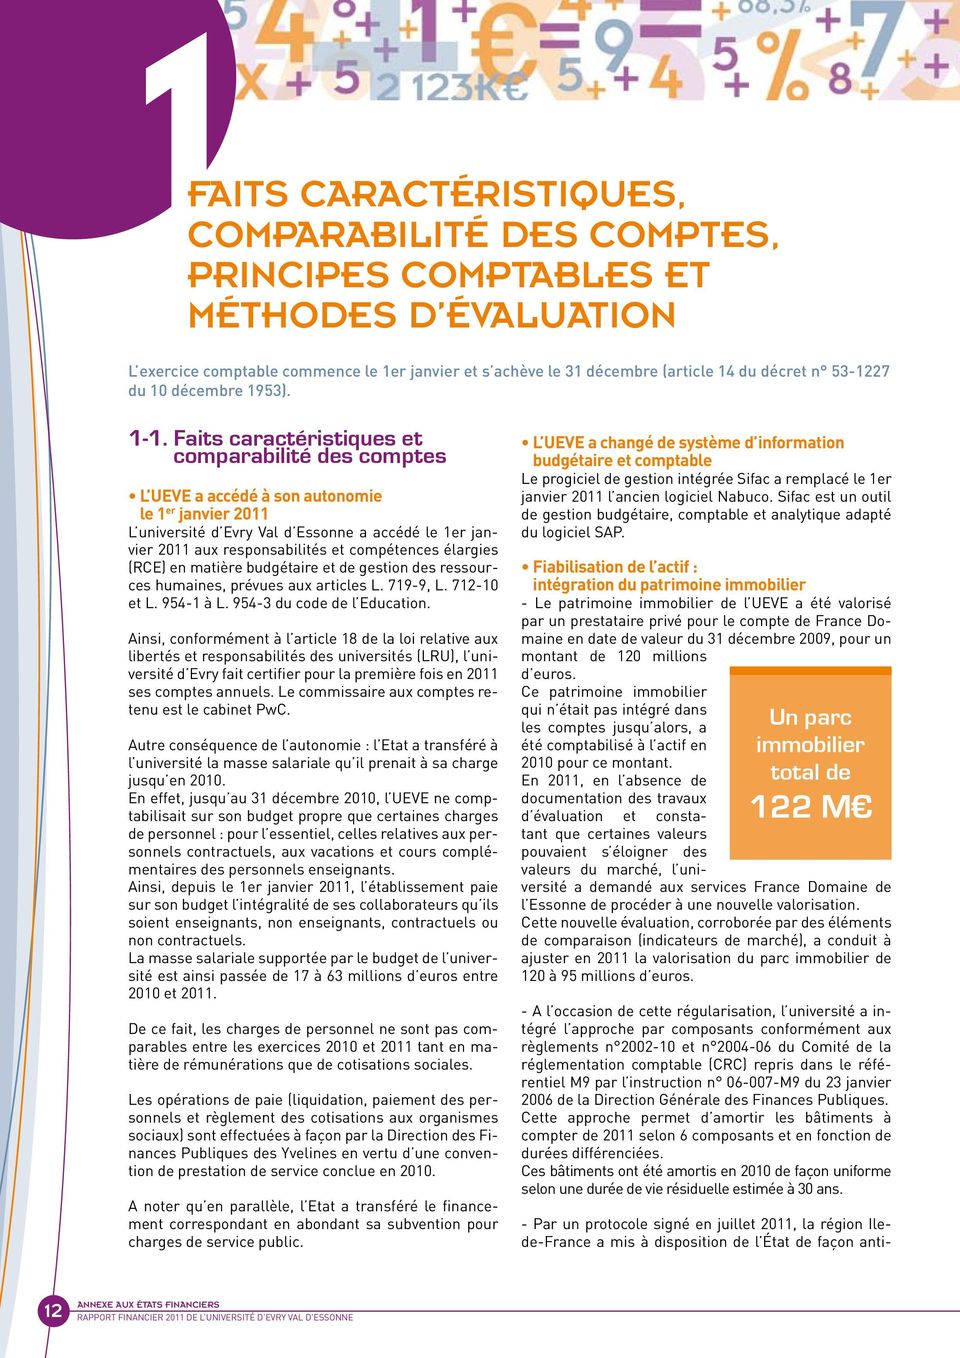 Faits caractéristiques et comparabilité des comptes L UEVE a accédé à son autonomie le 1 er janvier L université d Evry Val d Essonne a accédé le 1er janvier aux responsabilités et compétences